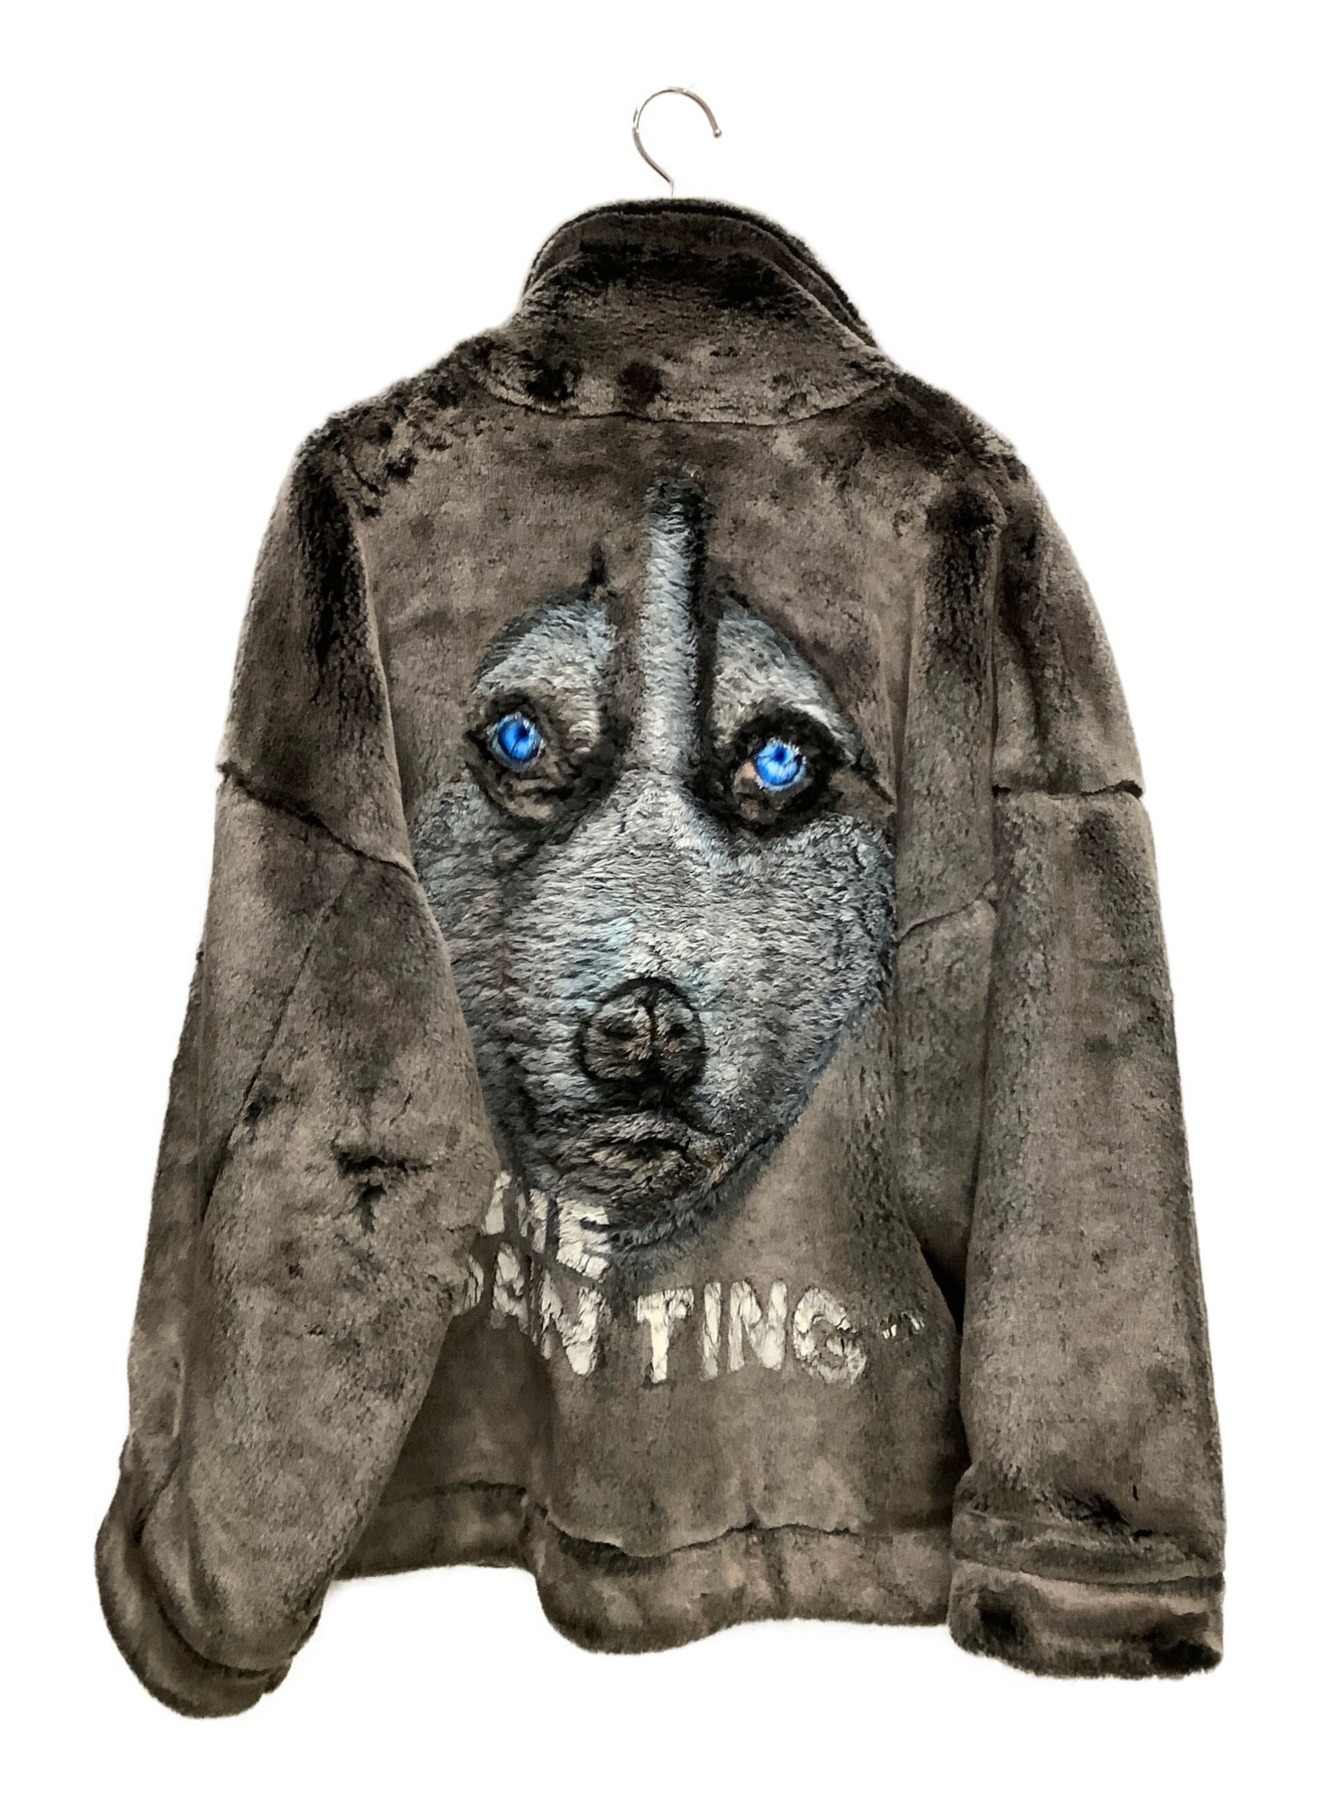 正規店購入品でしょうかdoublet animal hand-paint fur jacket